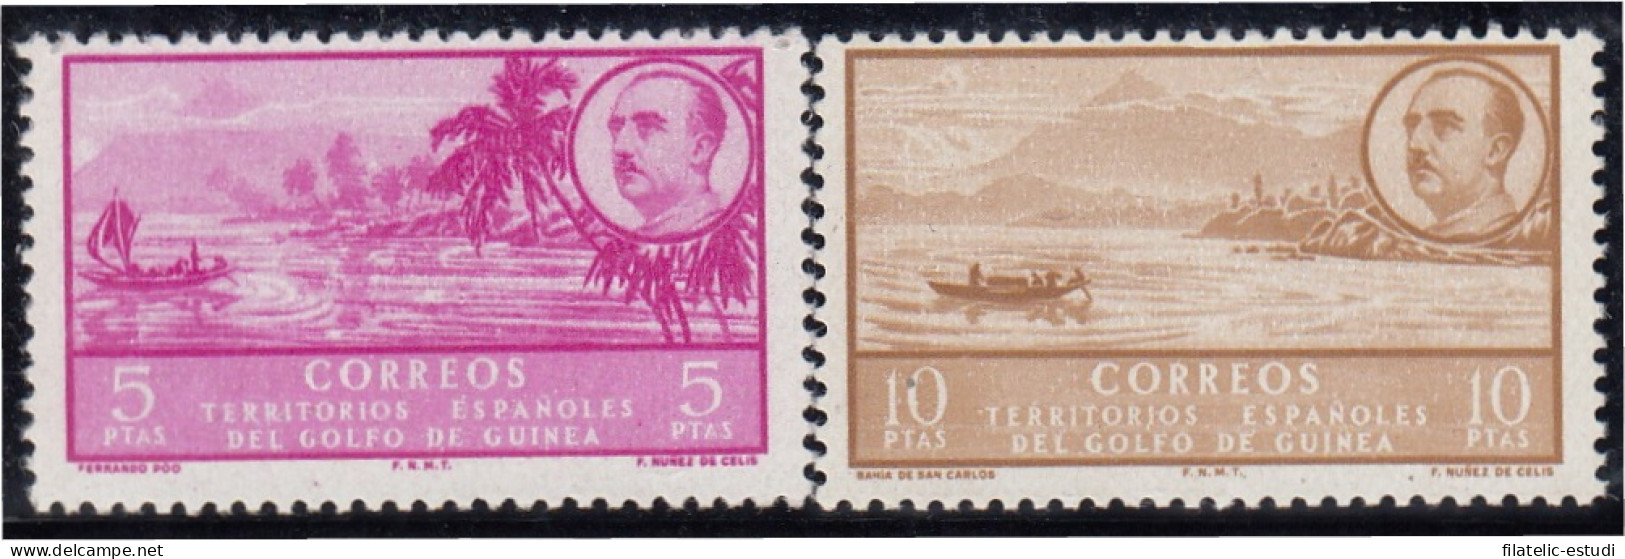 Guinea Española 291/92 1949/50 ( 277/93) Paisajes Franco MNH - Guinée Espagnole